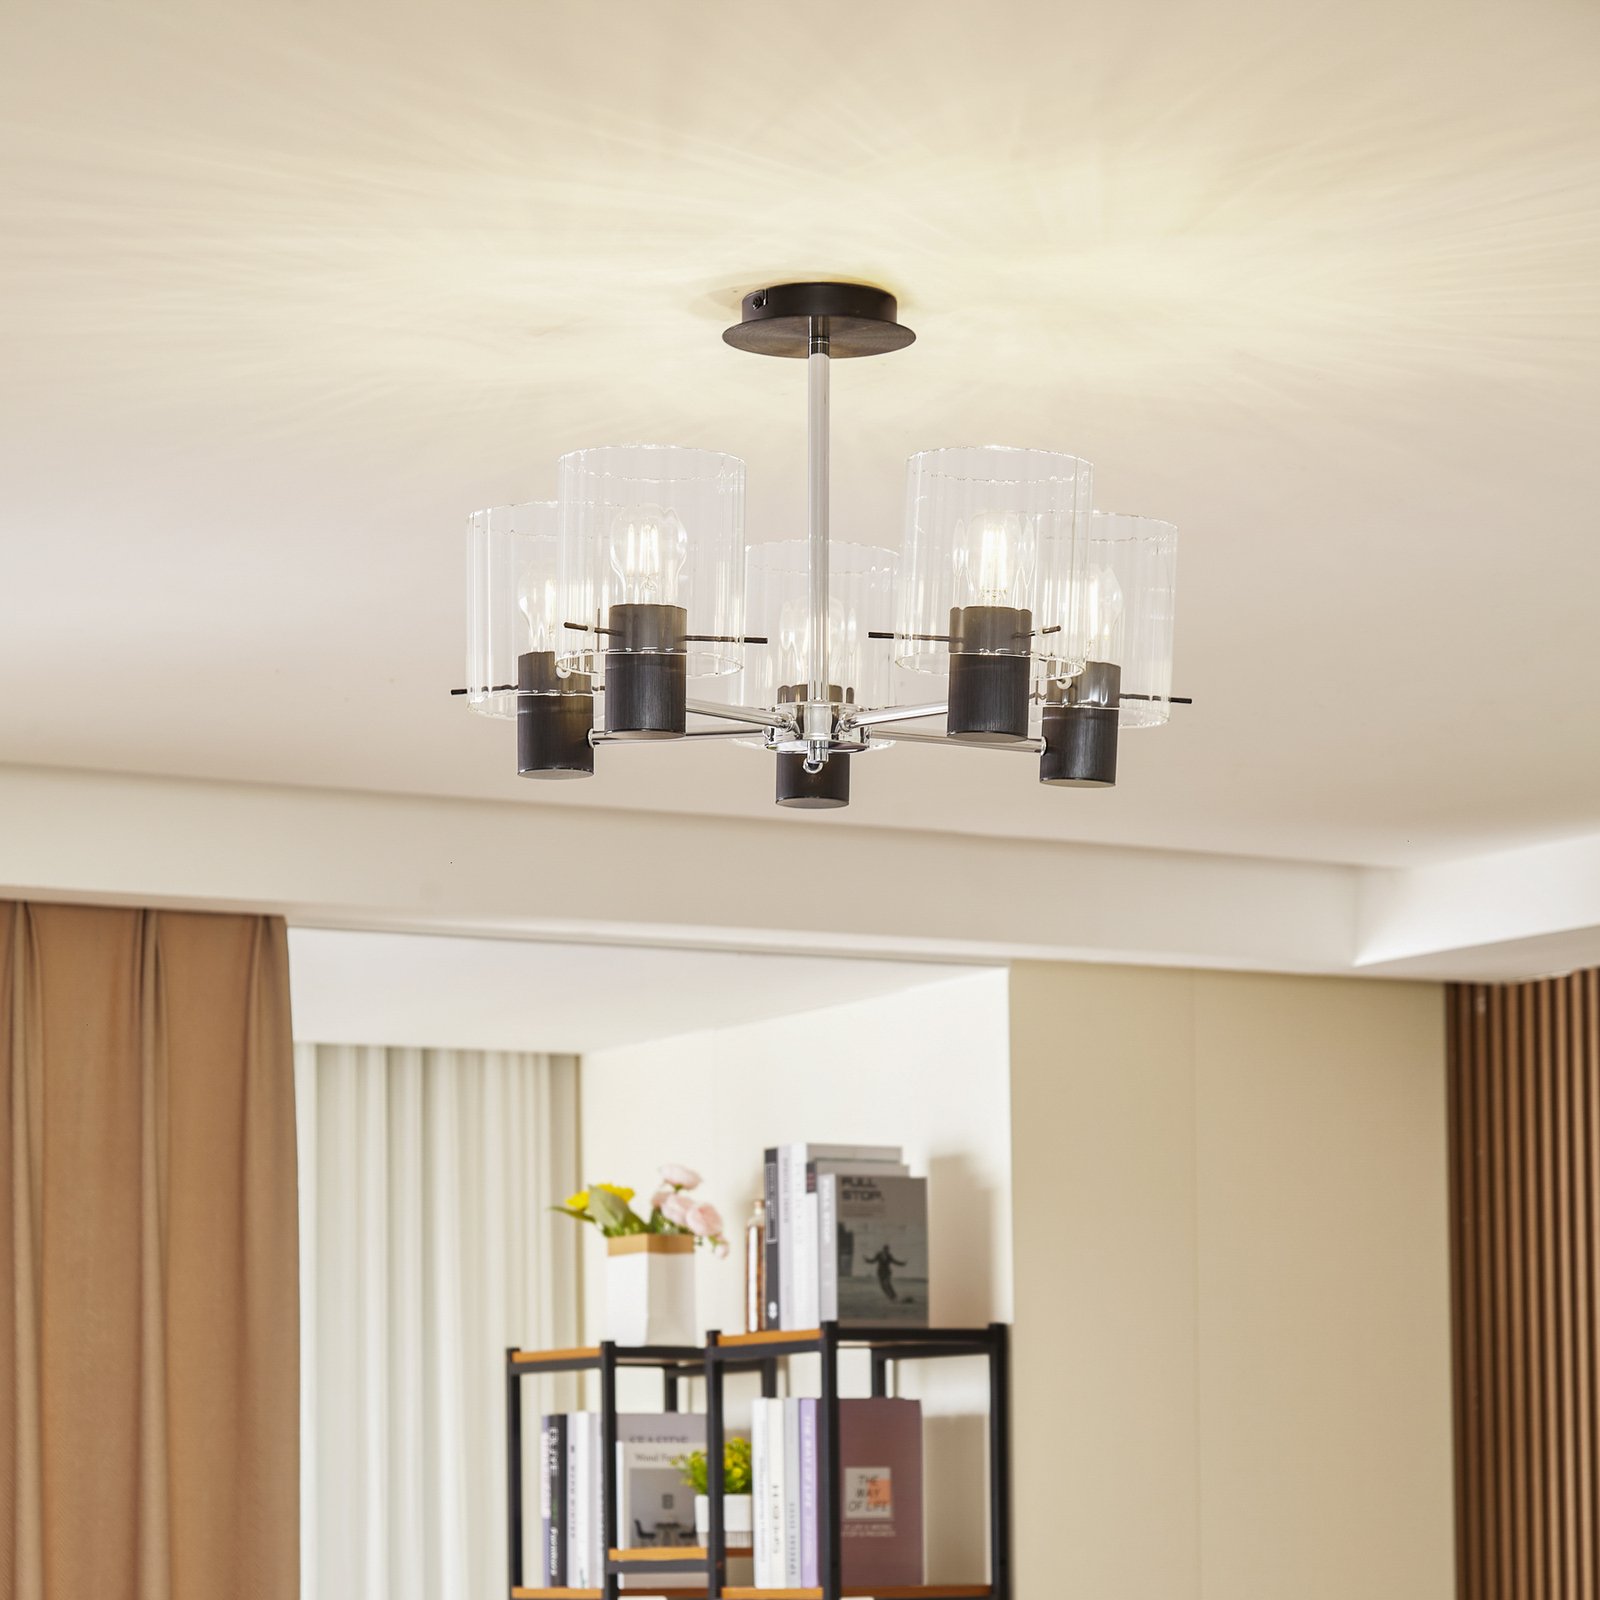 Lucande plafondlamp Eirian, 5-lamps, zwart, glas, E27